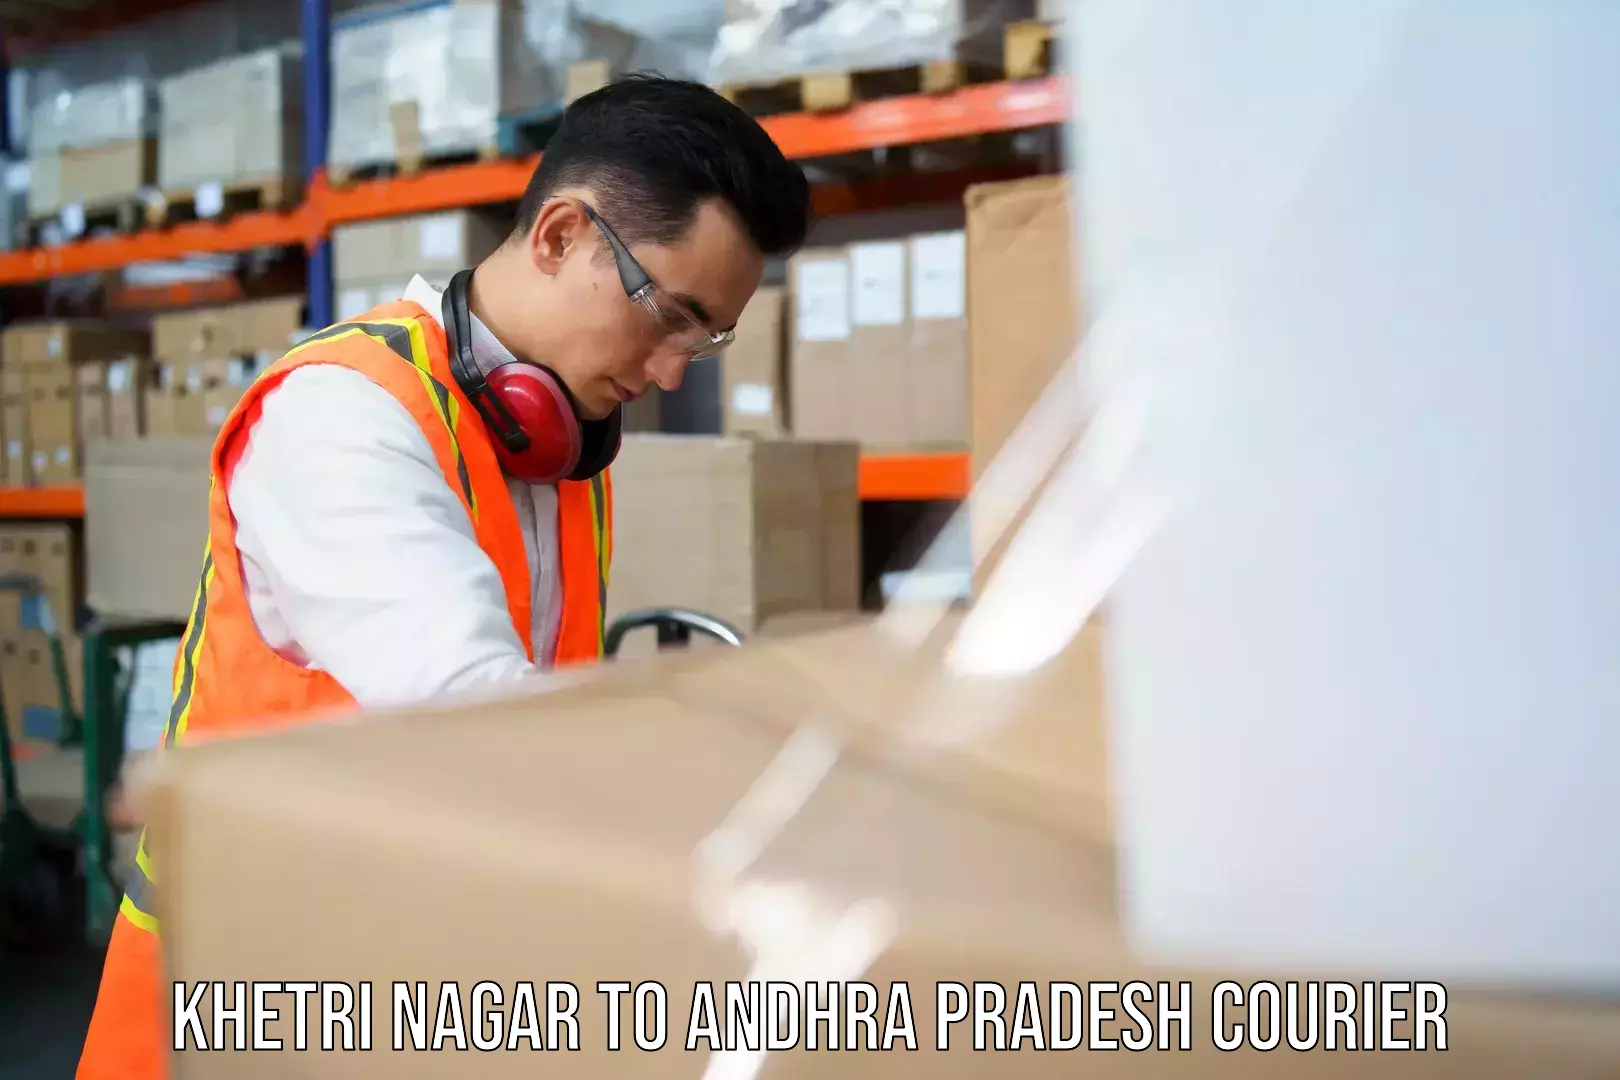 Next-generation courier services Khetri Nagar to Vizianagaram